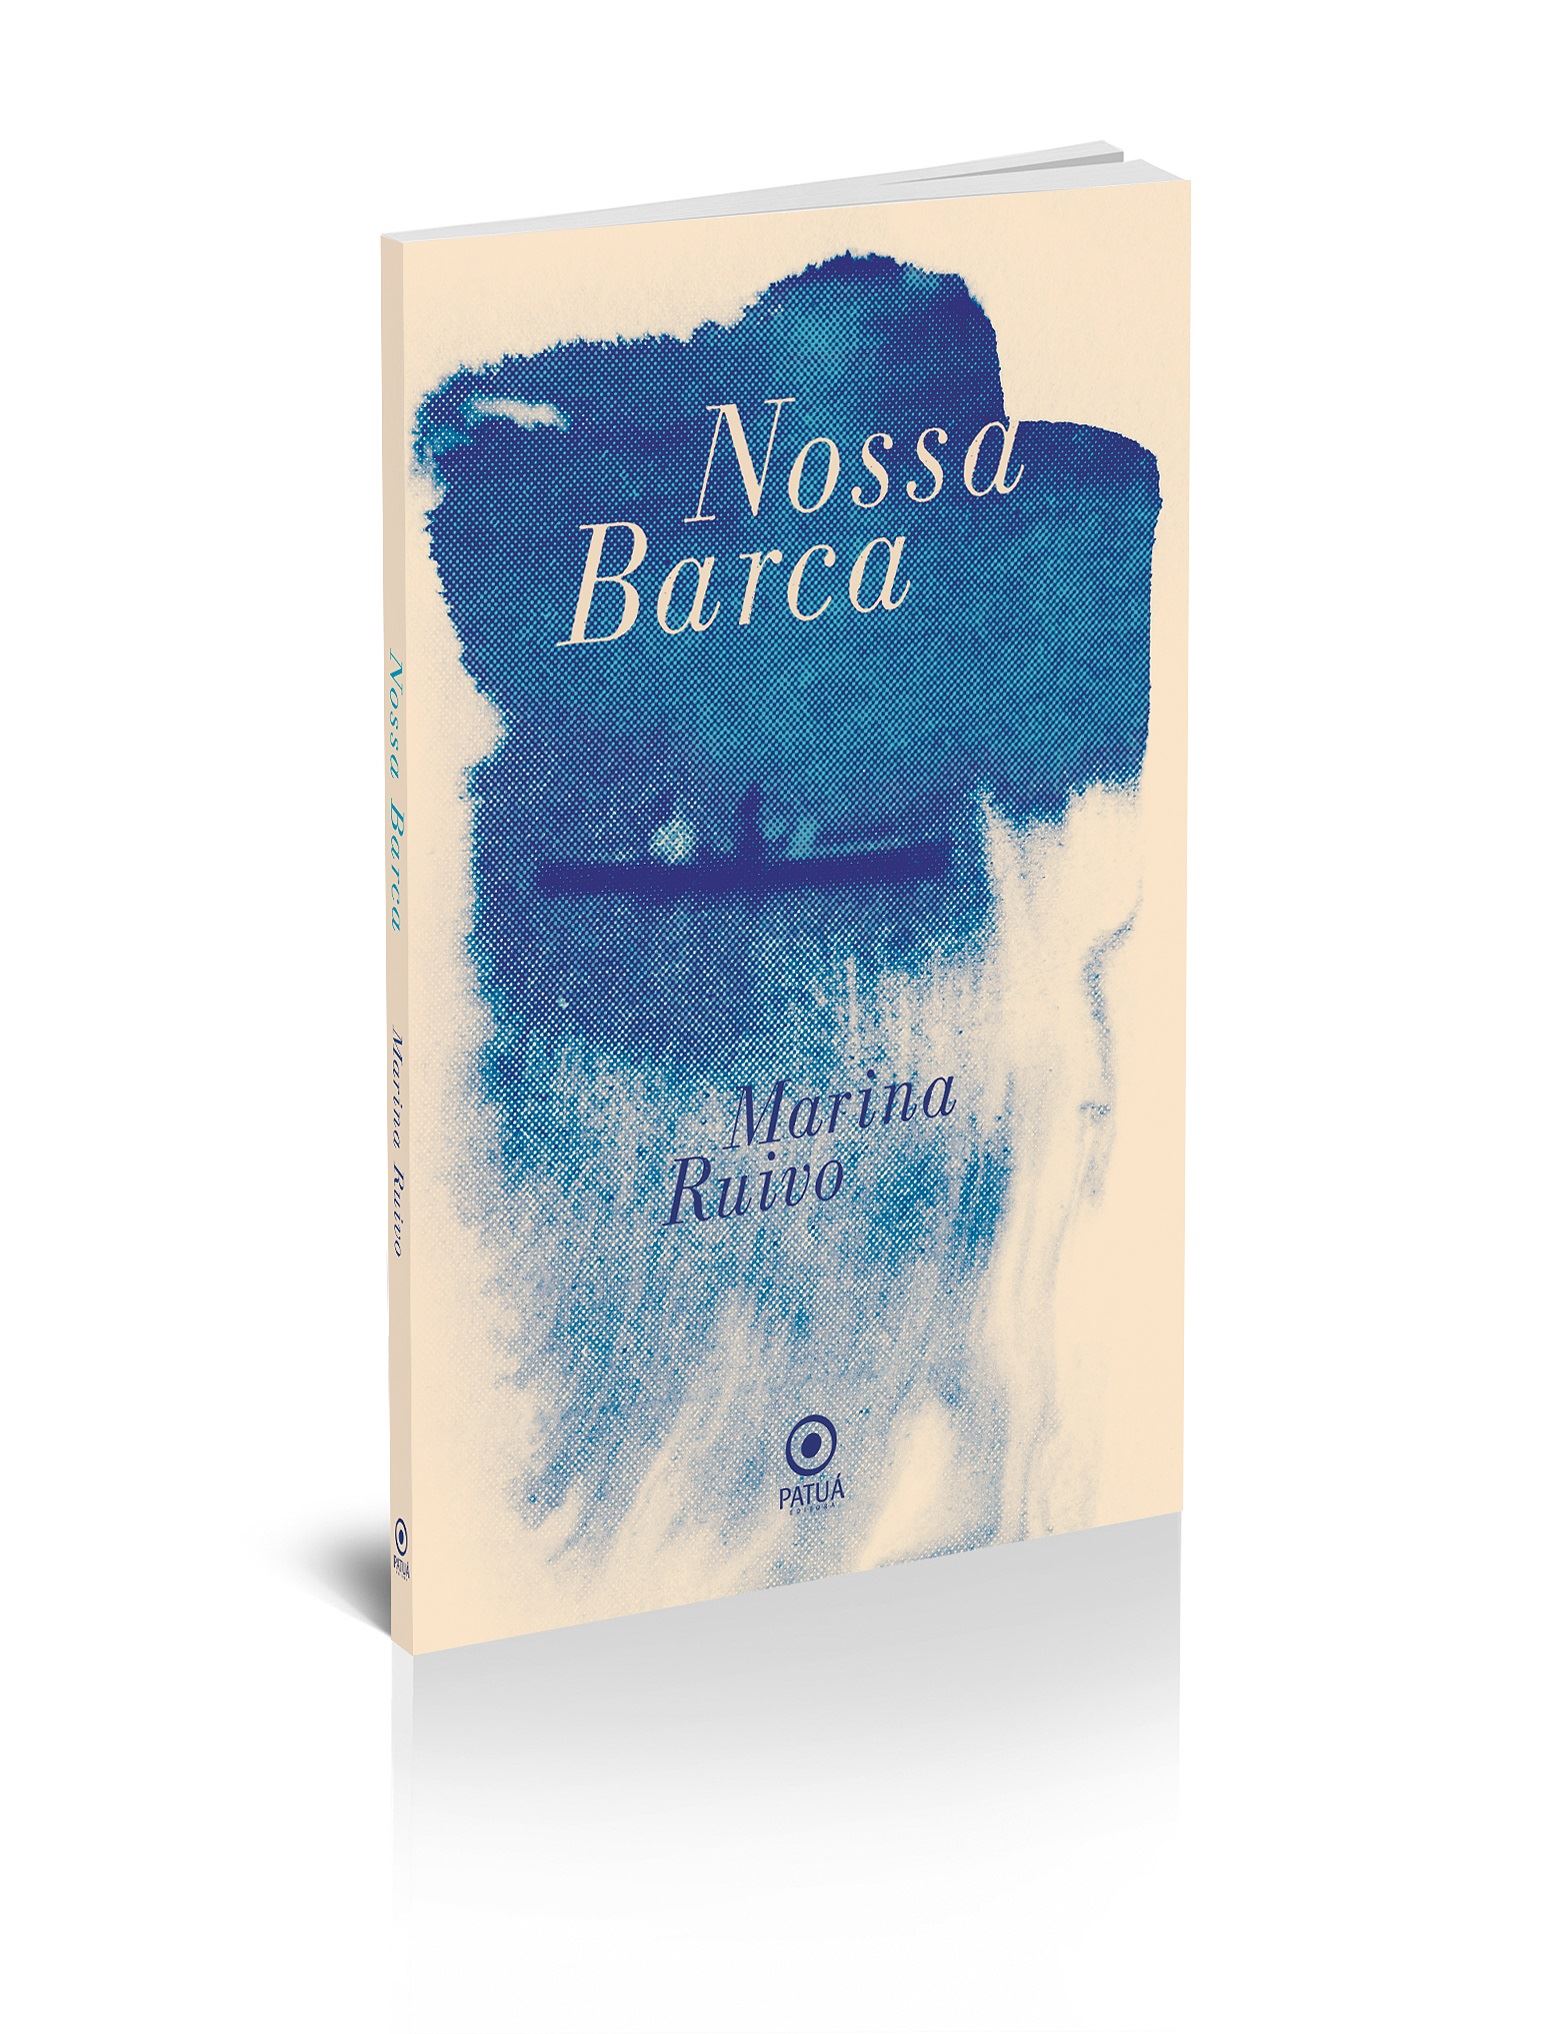 MARINARUIVO LIVRO - Livro de poemas Nossa Barca é uma lírica conversa íntima da poeta com seu ouvinte-leitor